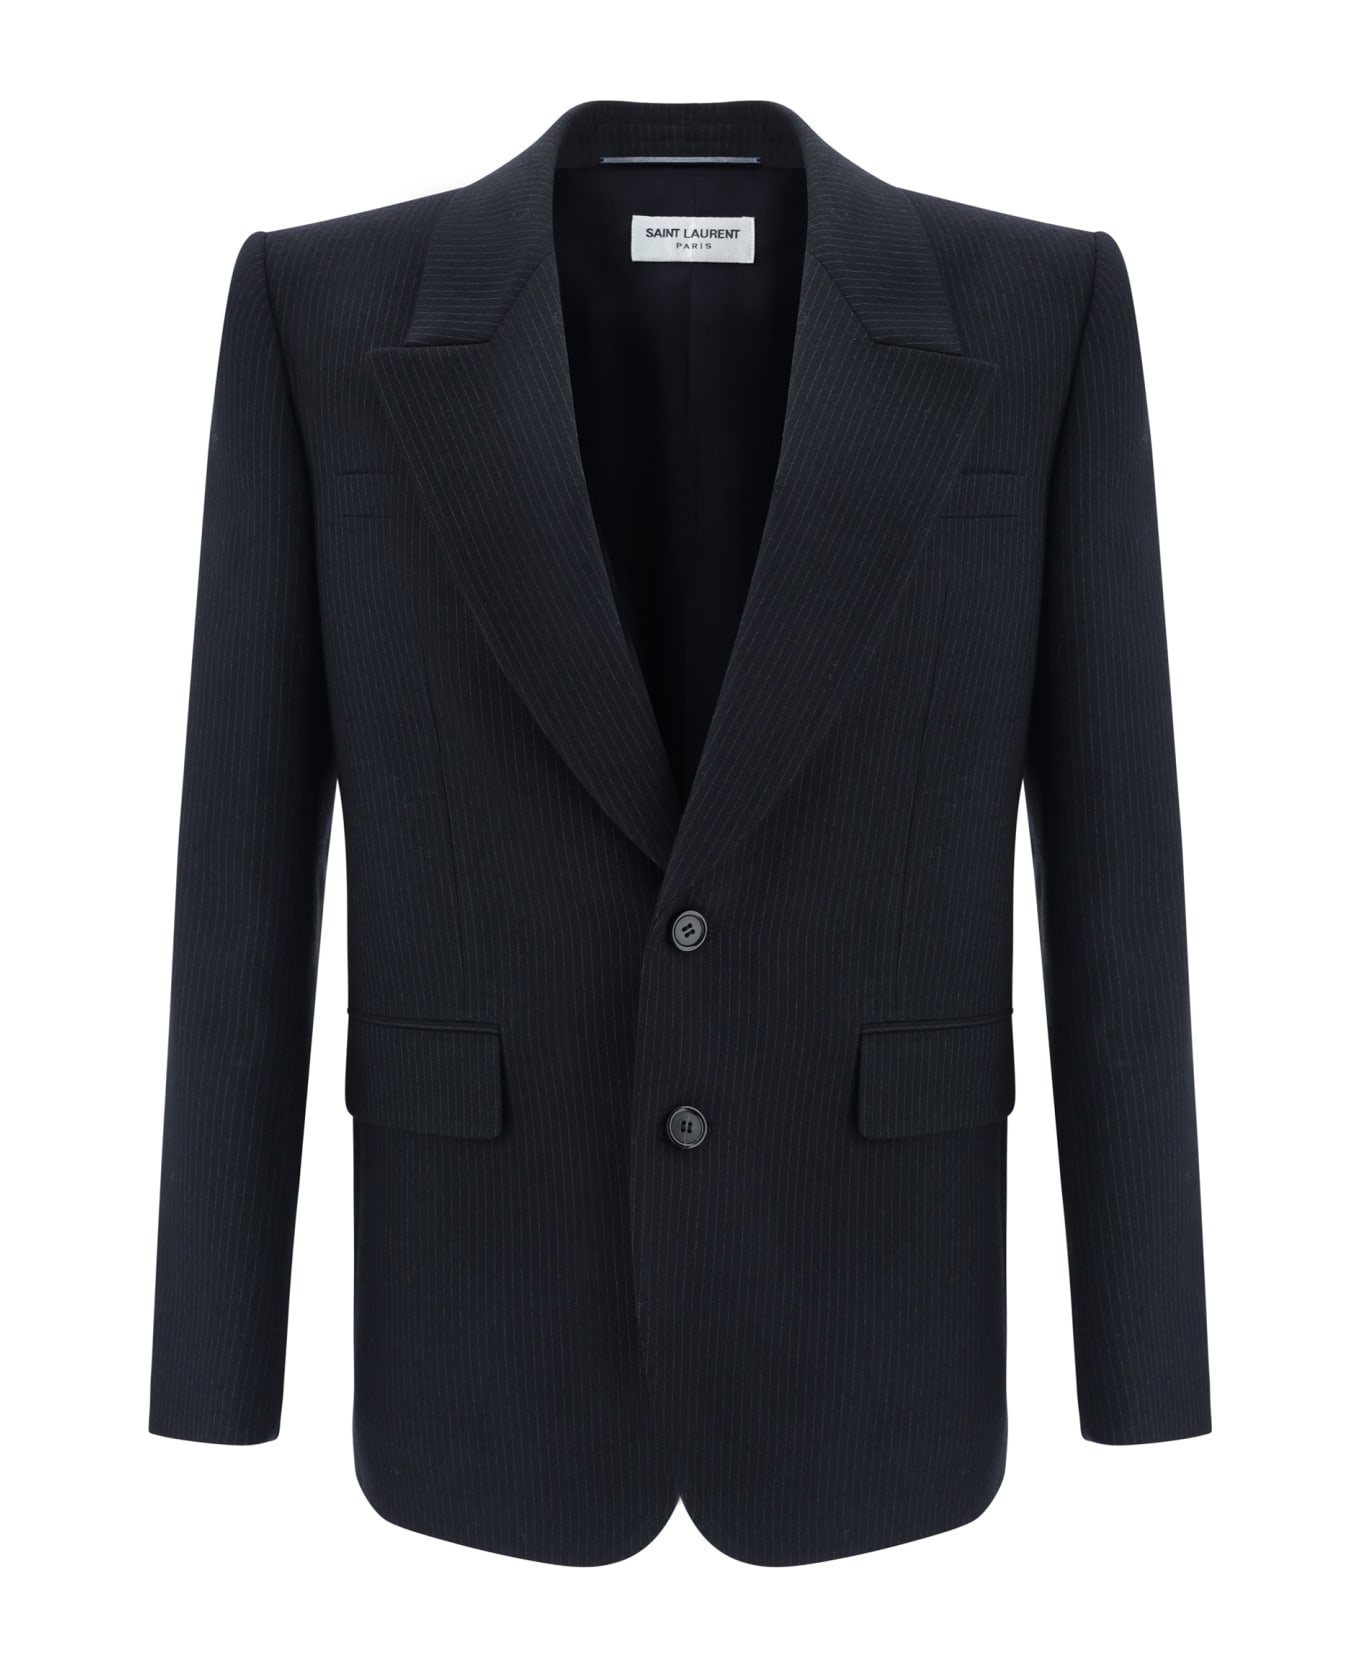 Saint Laurent Blazer Jacket - Noir Gris